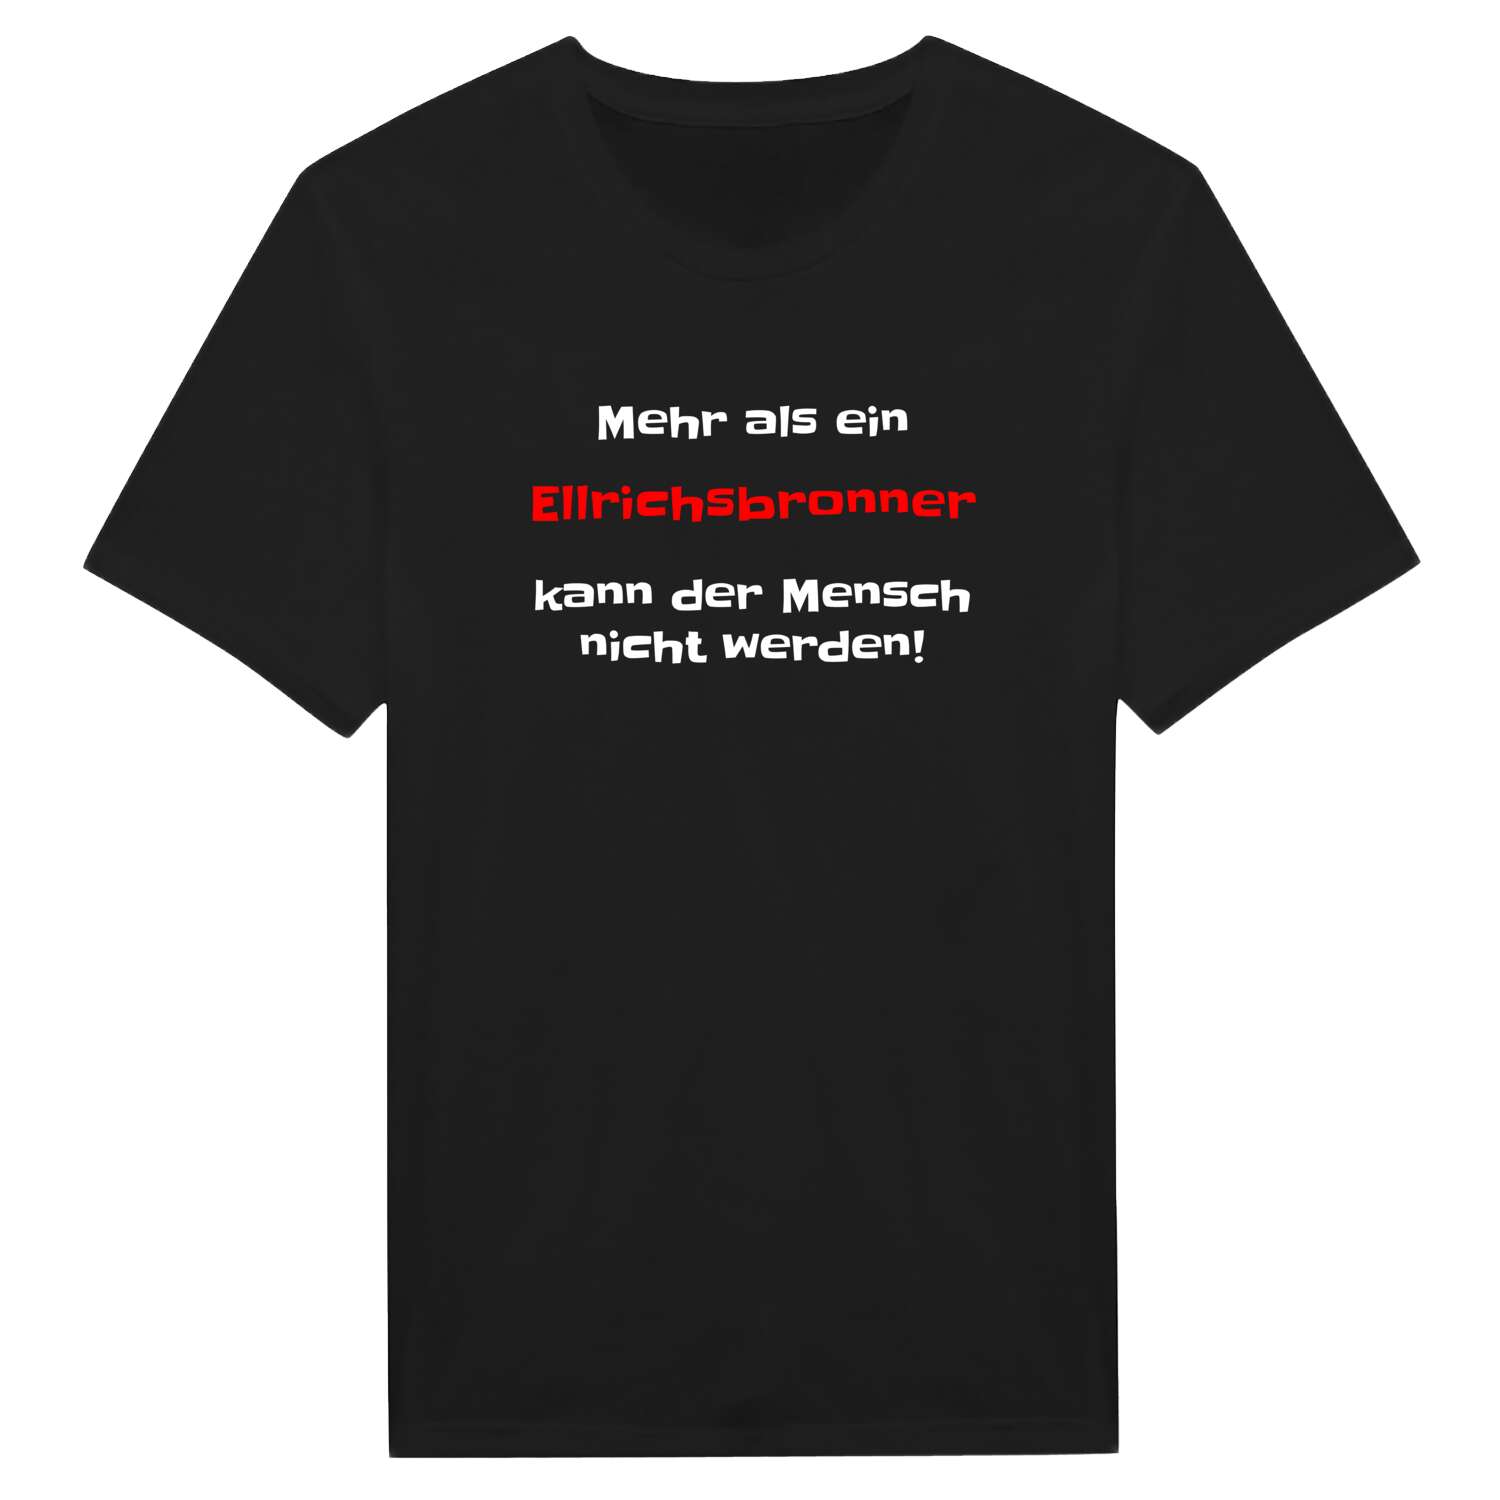 Ellrichsbronn T-Shirt »Mehr als ein«